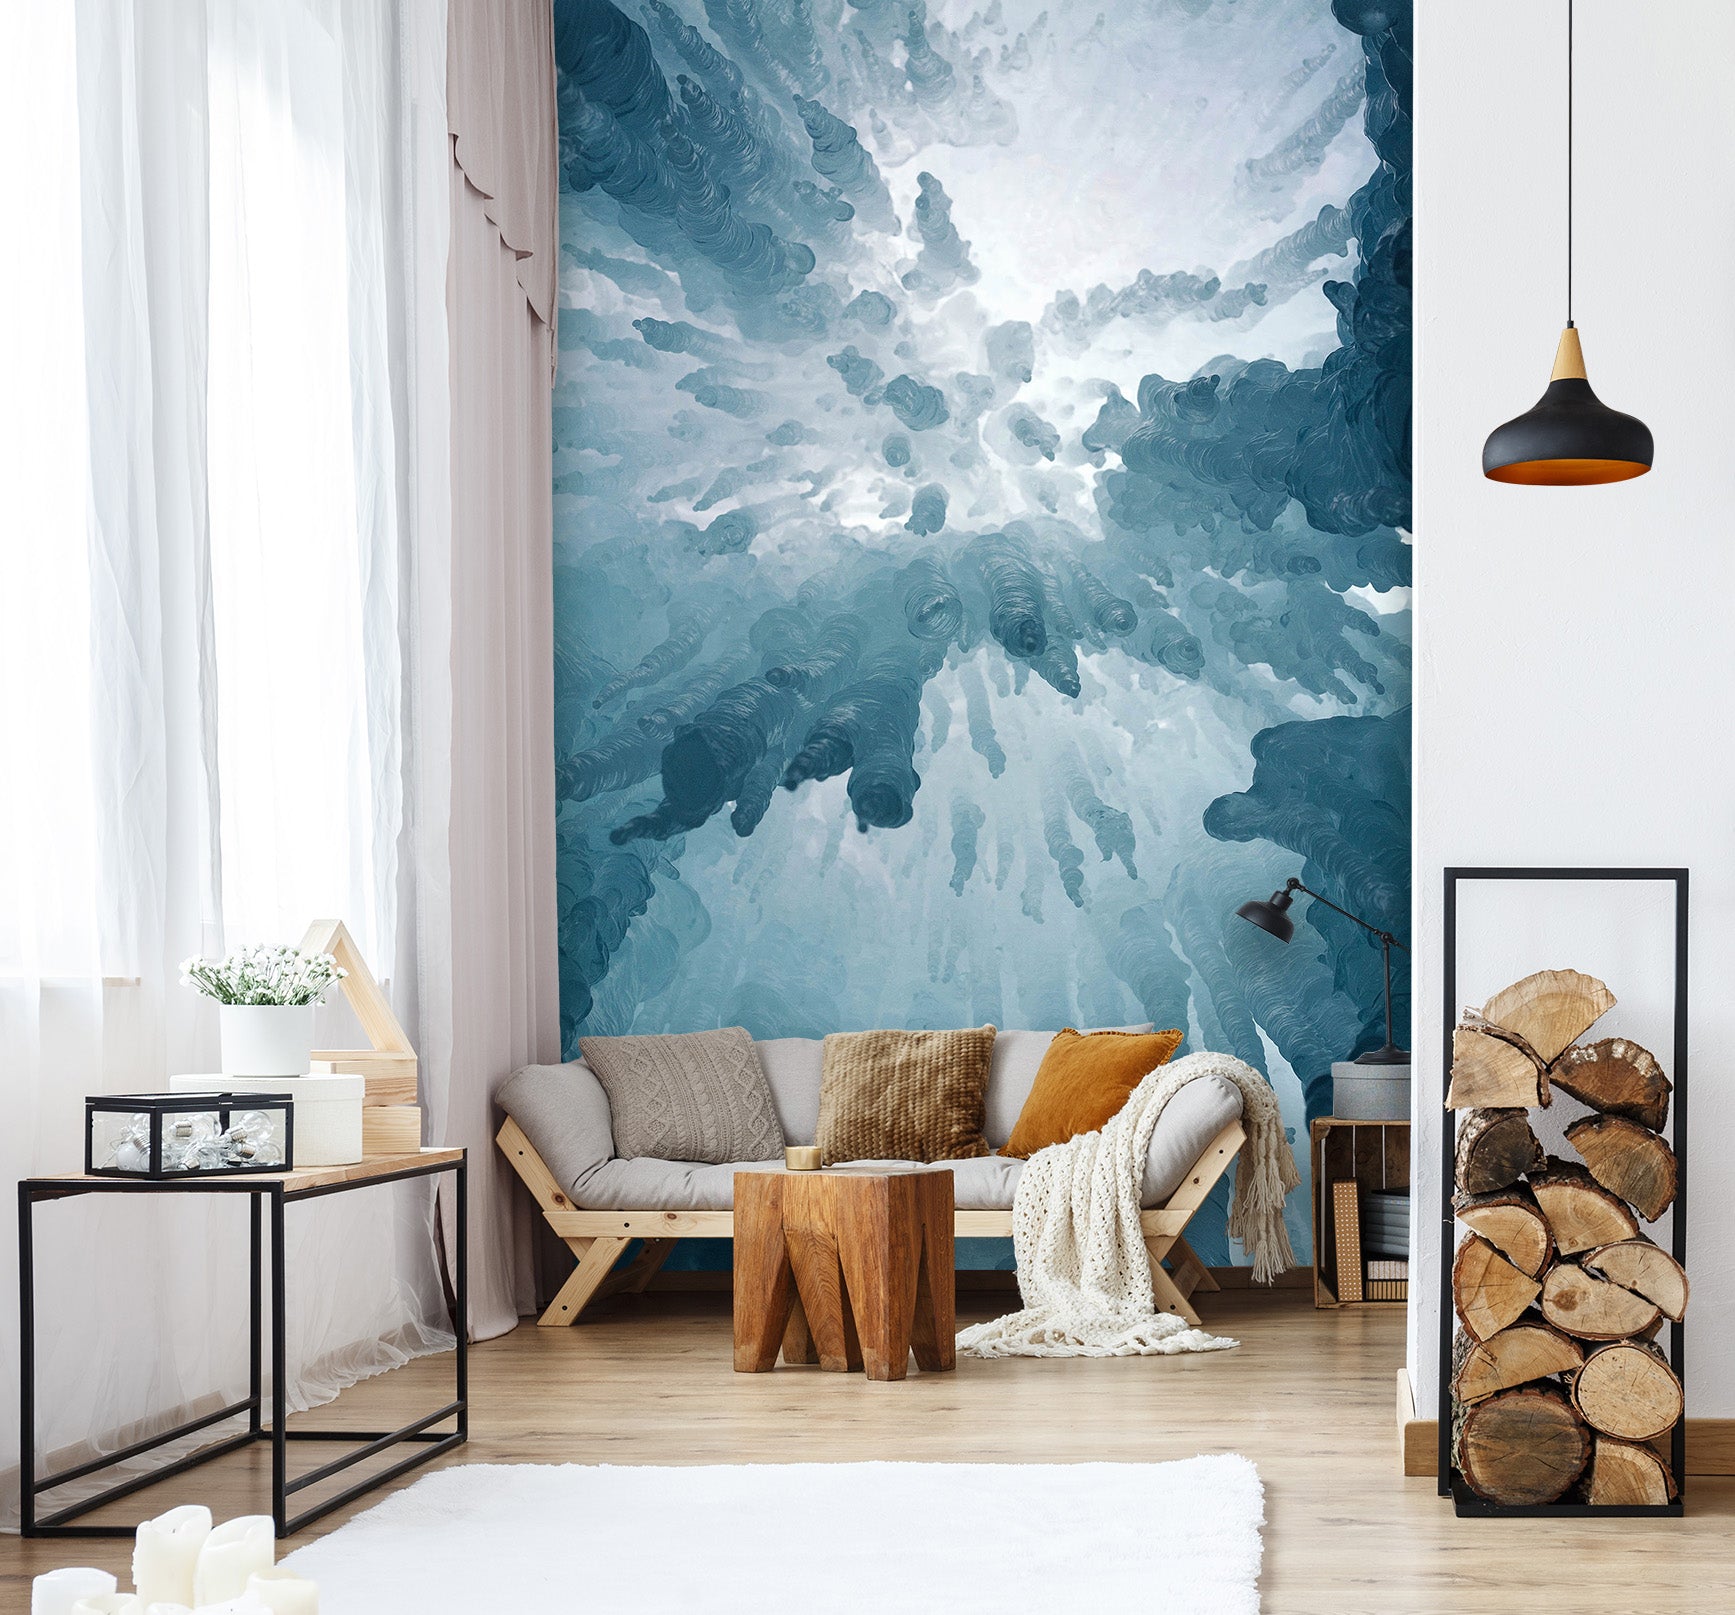 3D Glacier 1549 Wall Murals